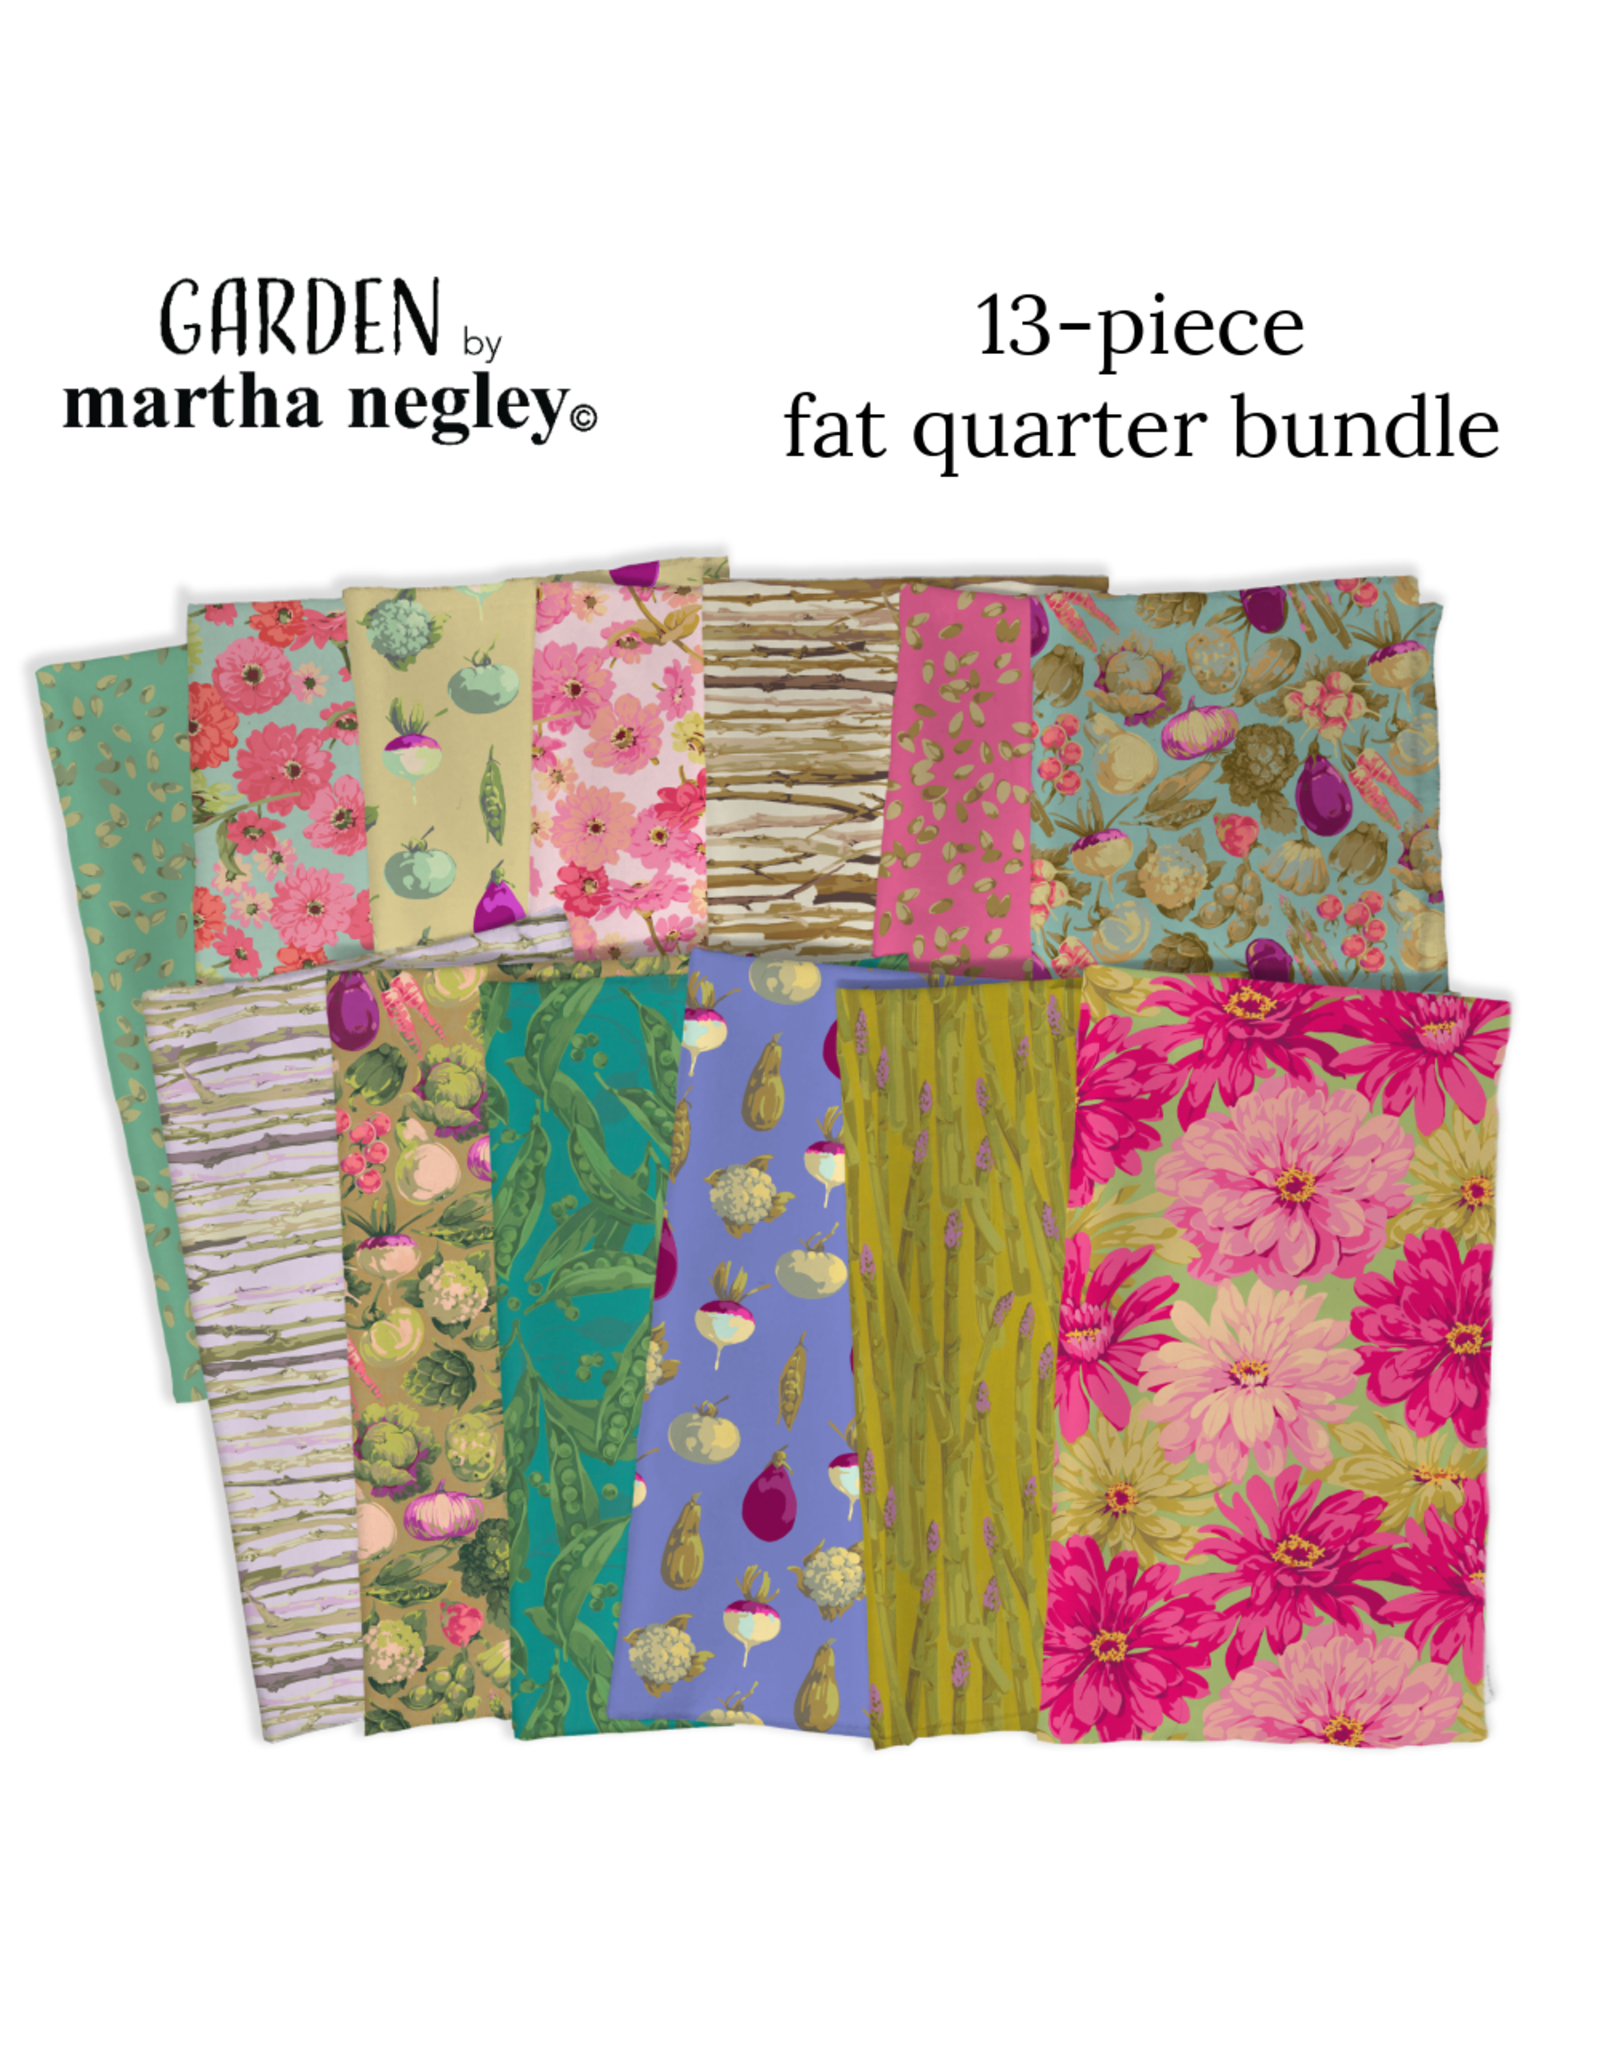 Martha Negley Garden, Fat Quarter Bundle containing 13 pcs.